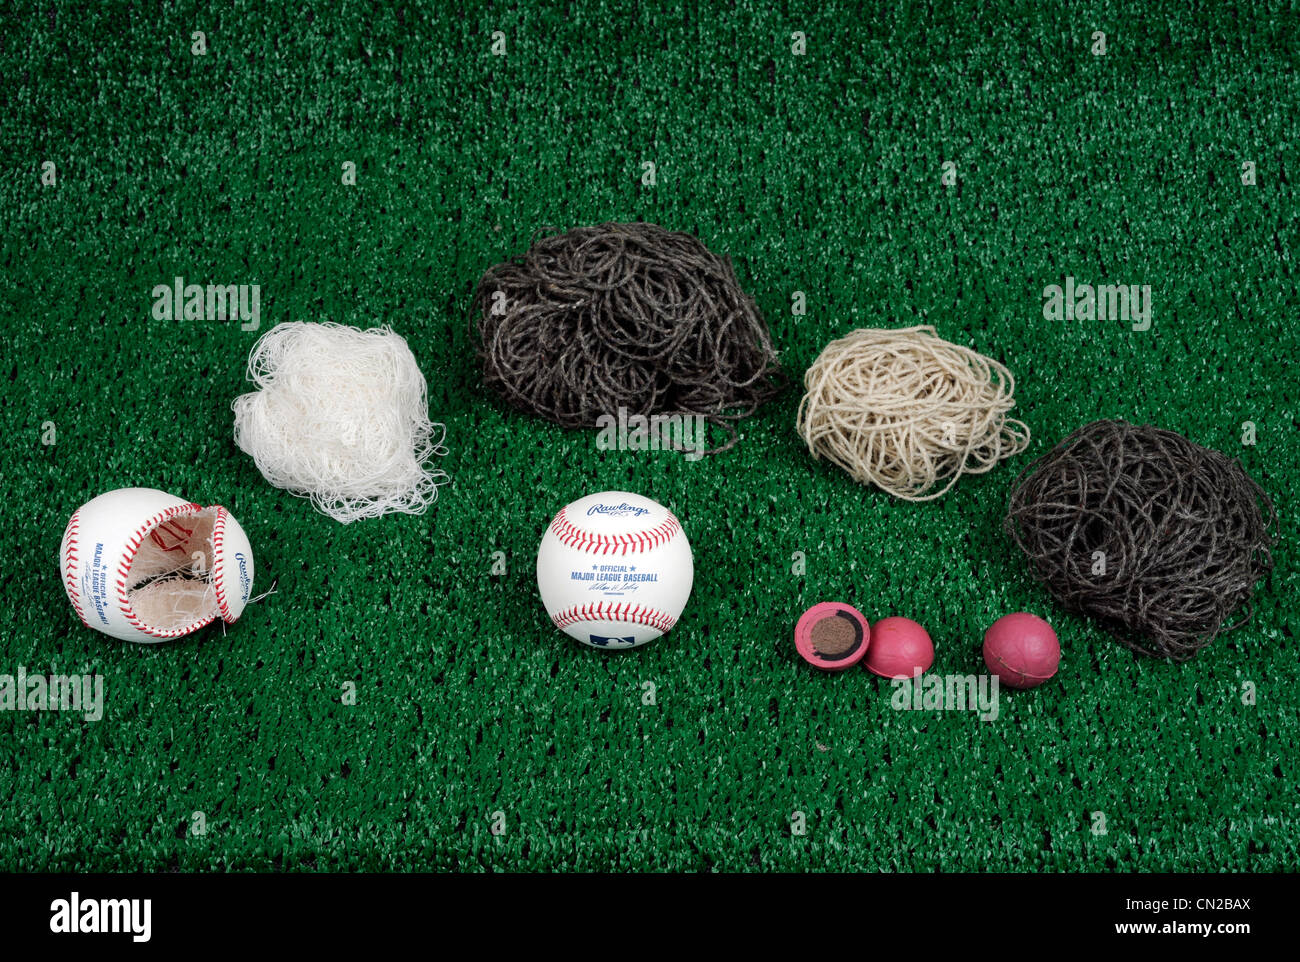 Dekonstruktion des Hauptliga-Baseball von Rawlings gemacht. Stockfoto